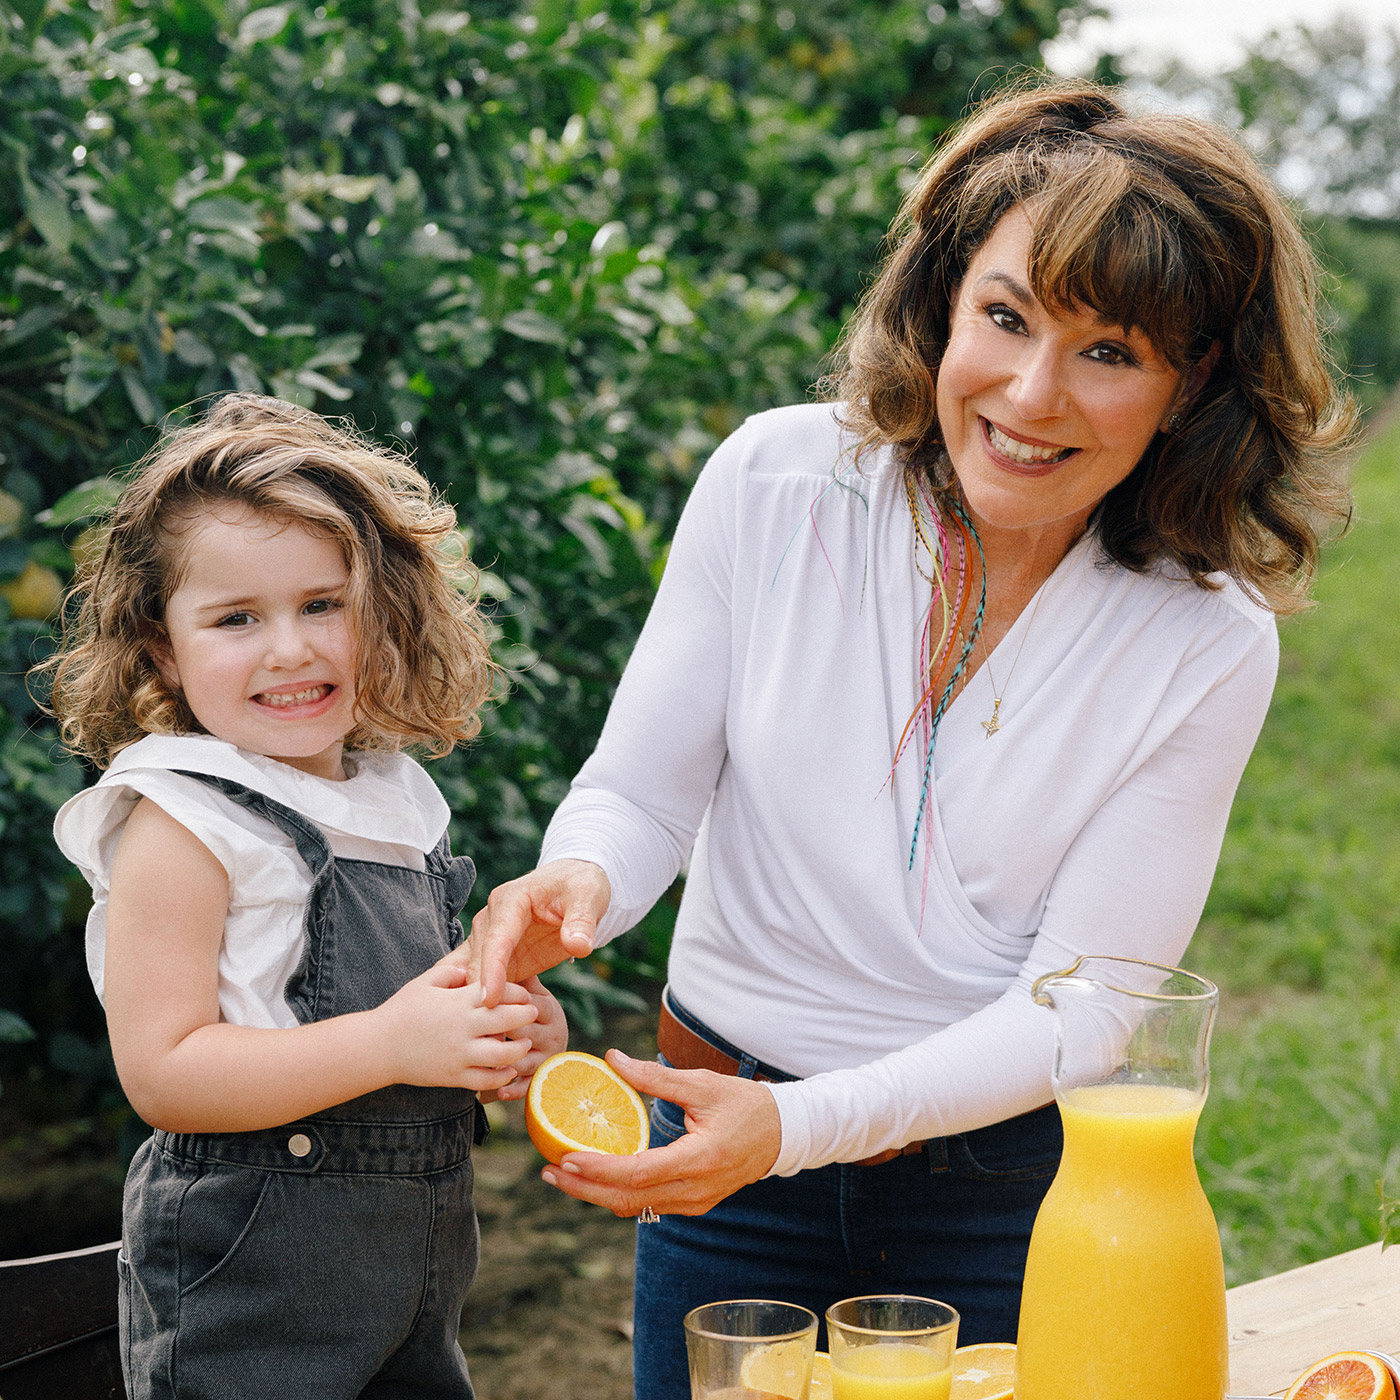 Marygrace with her child making orange juice